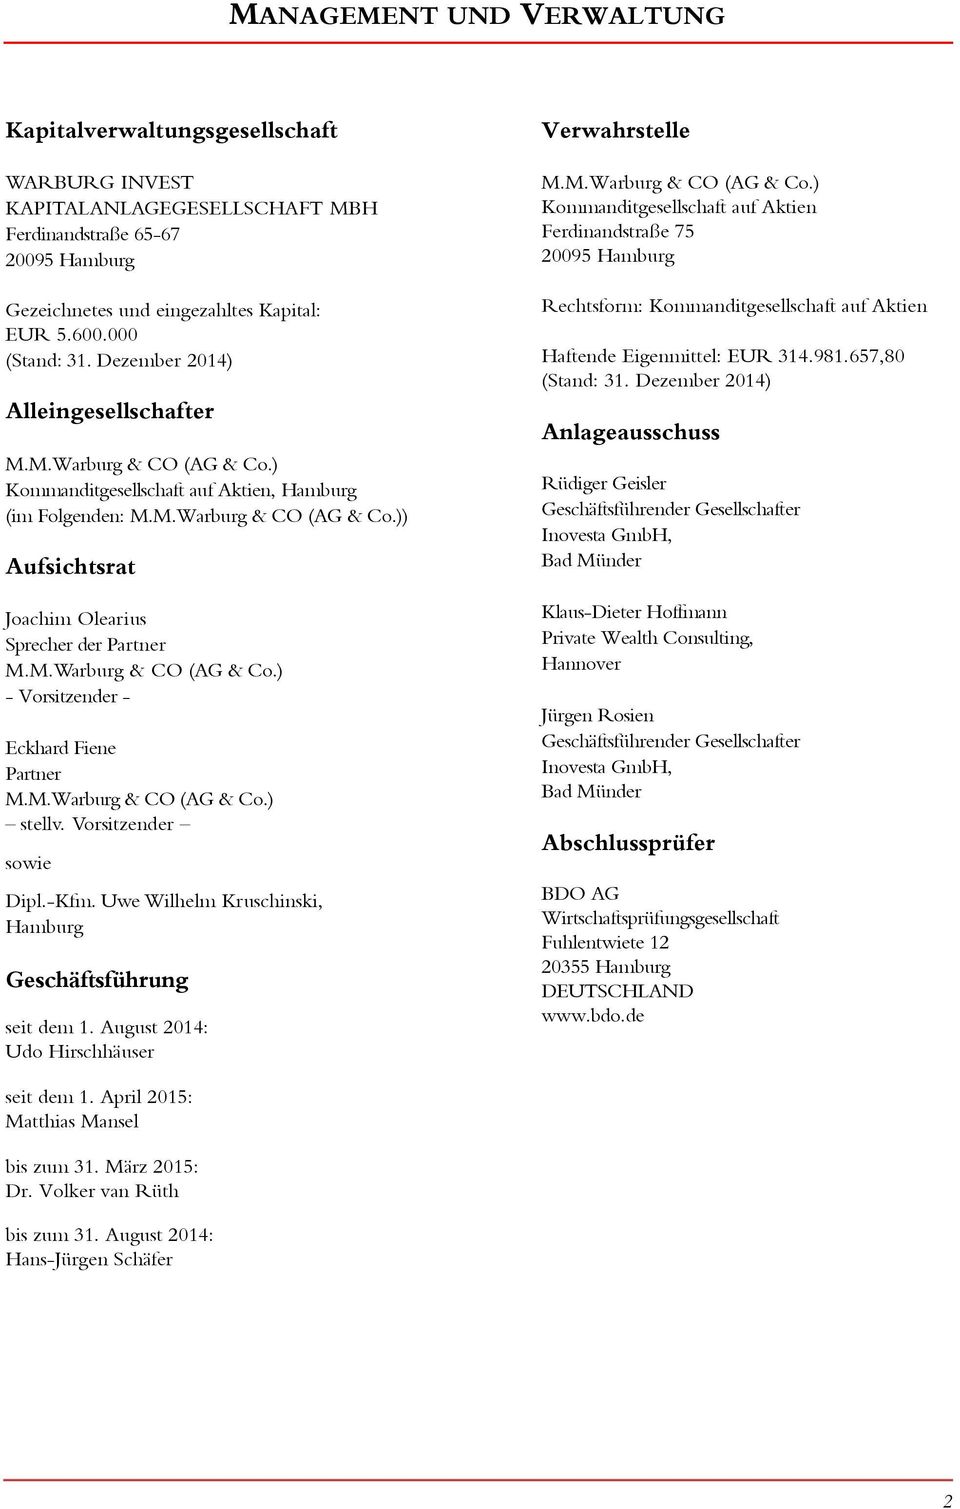 M.Warburg & CO (AG & Co.) - Vorsitzender - Eckhard Fiene Partner M.M.Warburg & CO (AG & Co.) stellv. Vorsitzender sowie Dipl.-Kfm. Uwe Wilhelm Kruschinski, Hamburg Geschäftsführung seit dem 1.